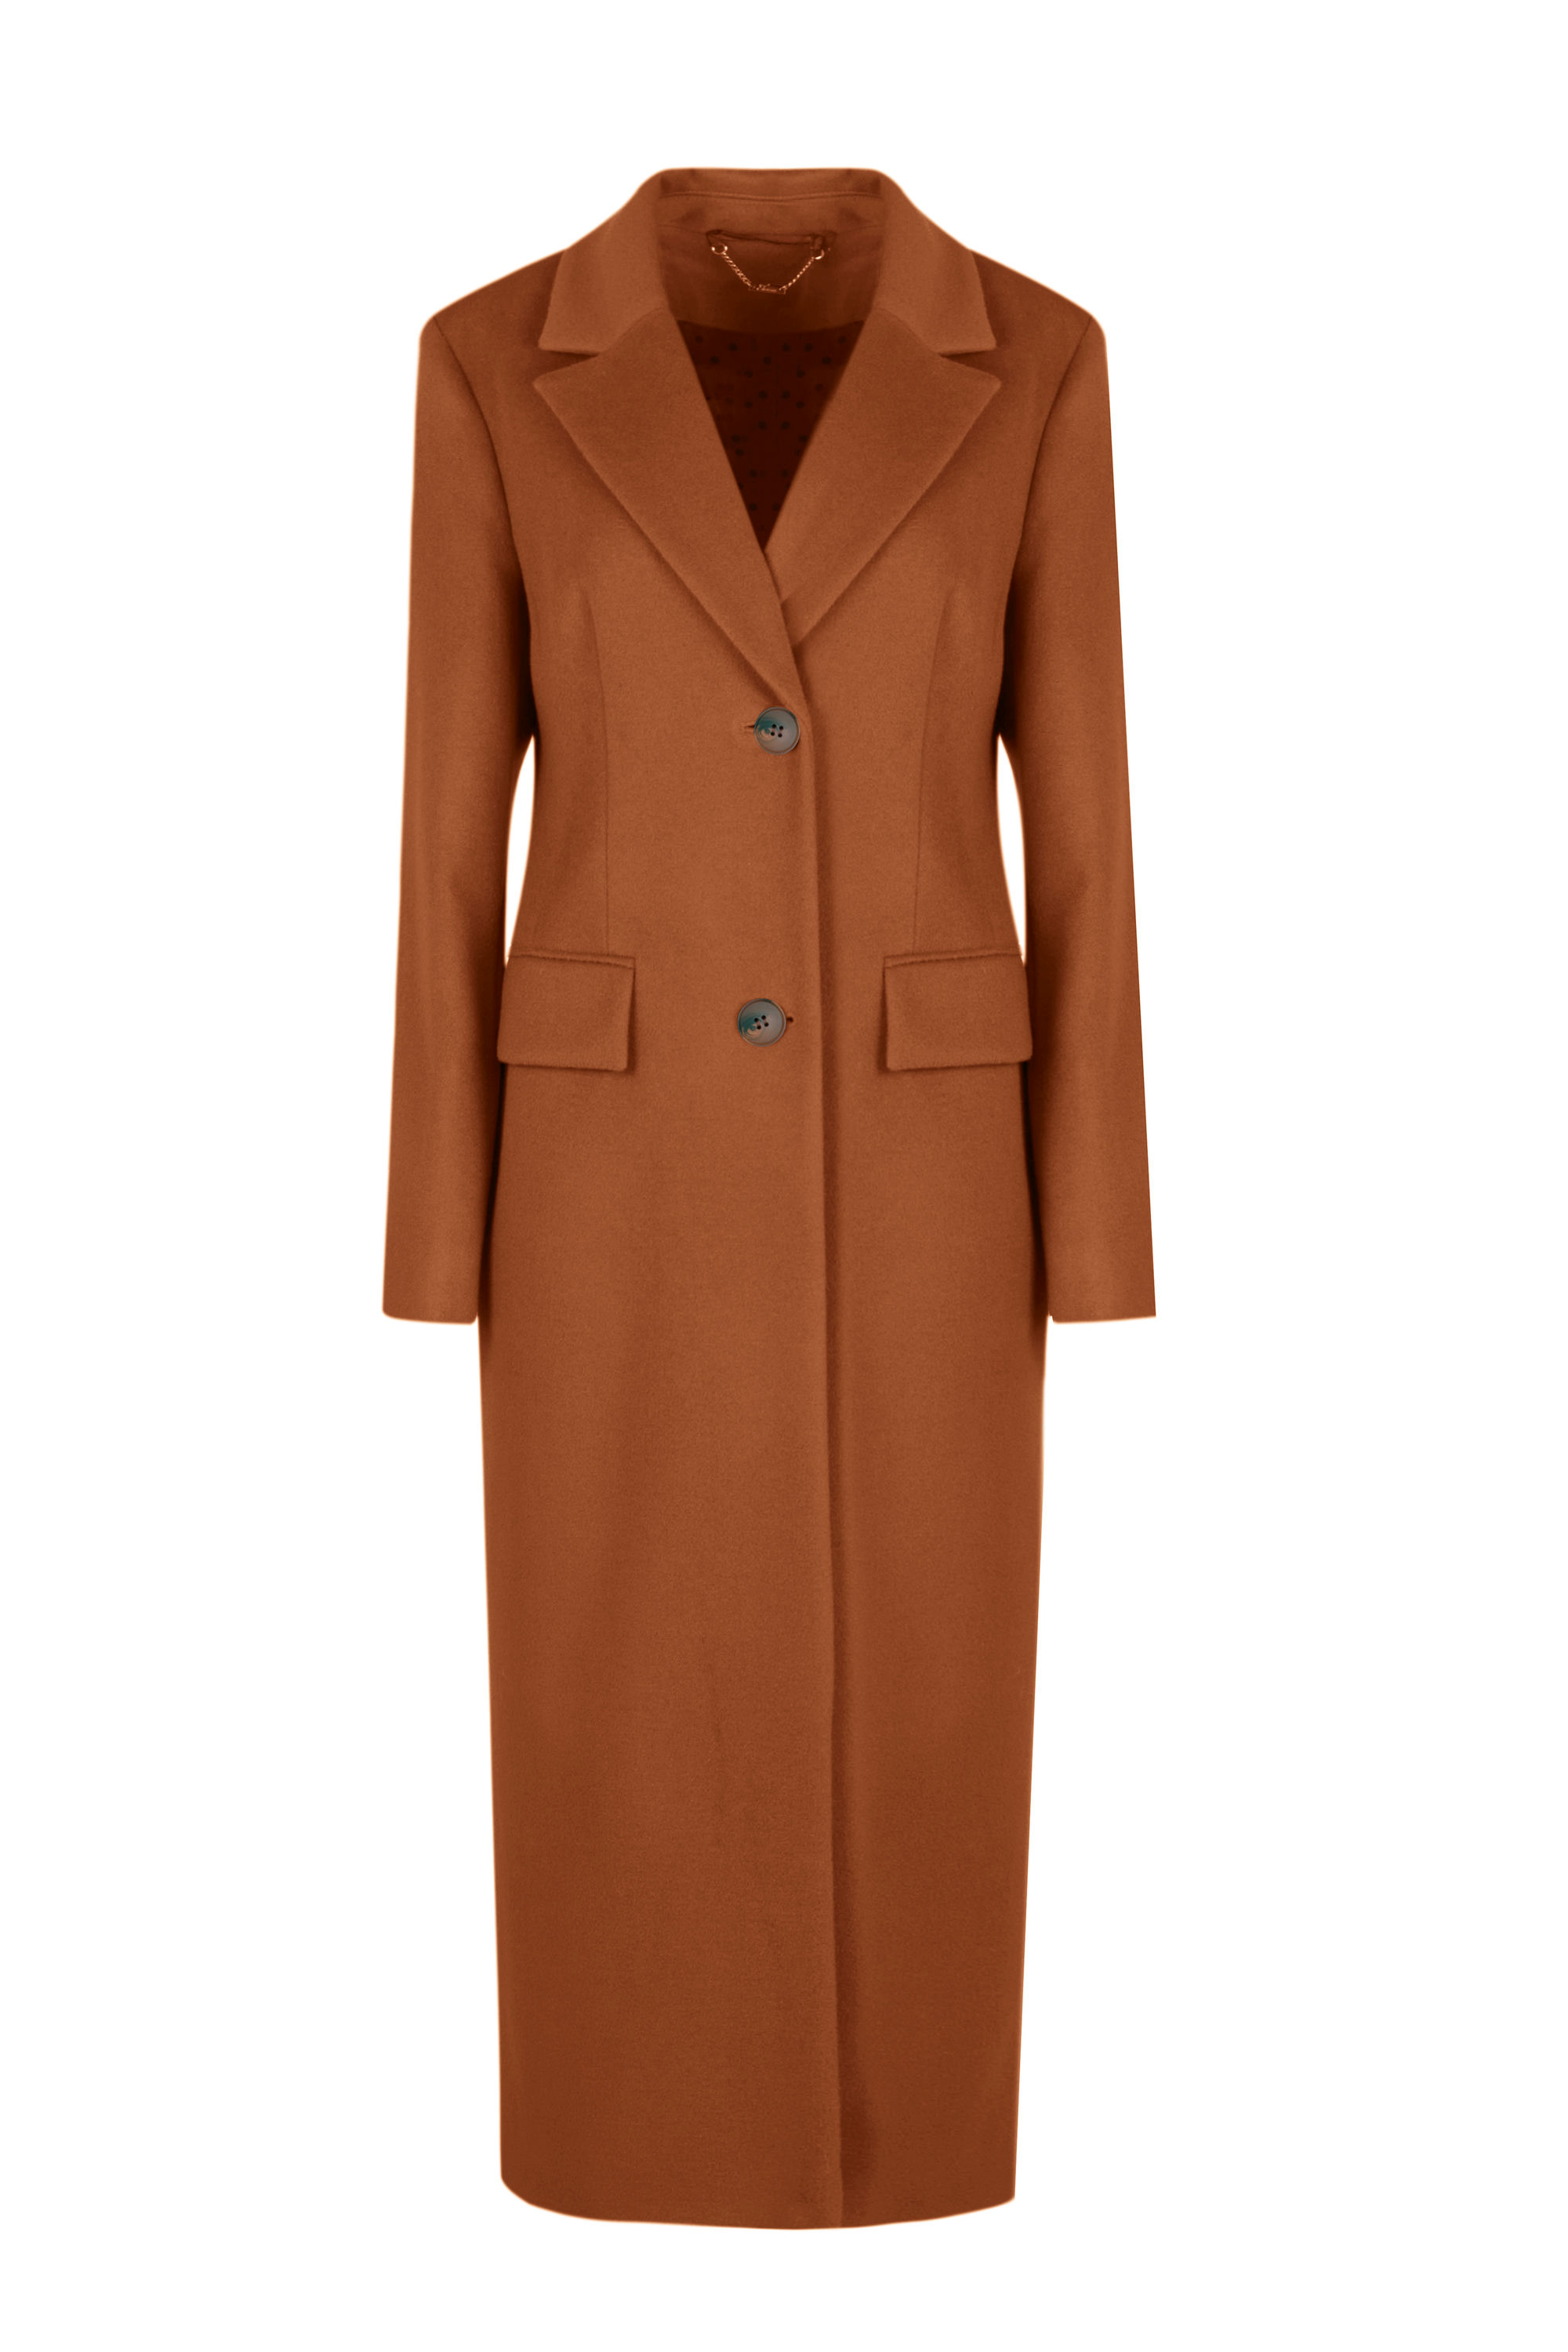 Пальто женское демисезонное 1-188. Фото 1.